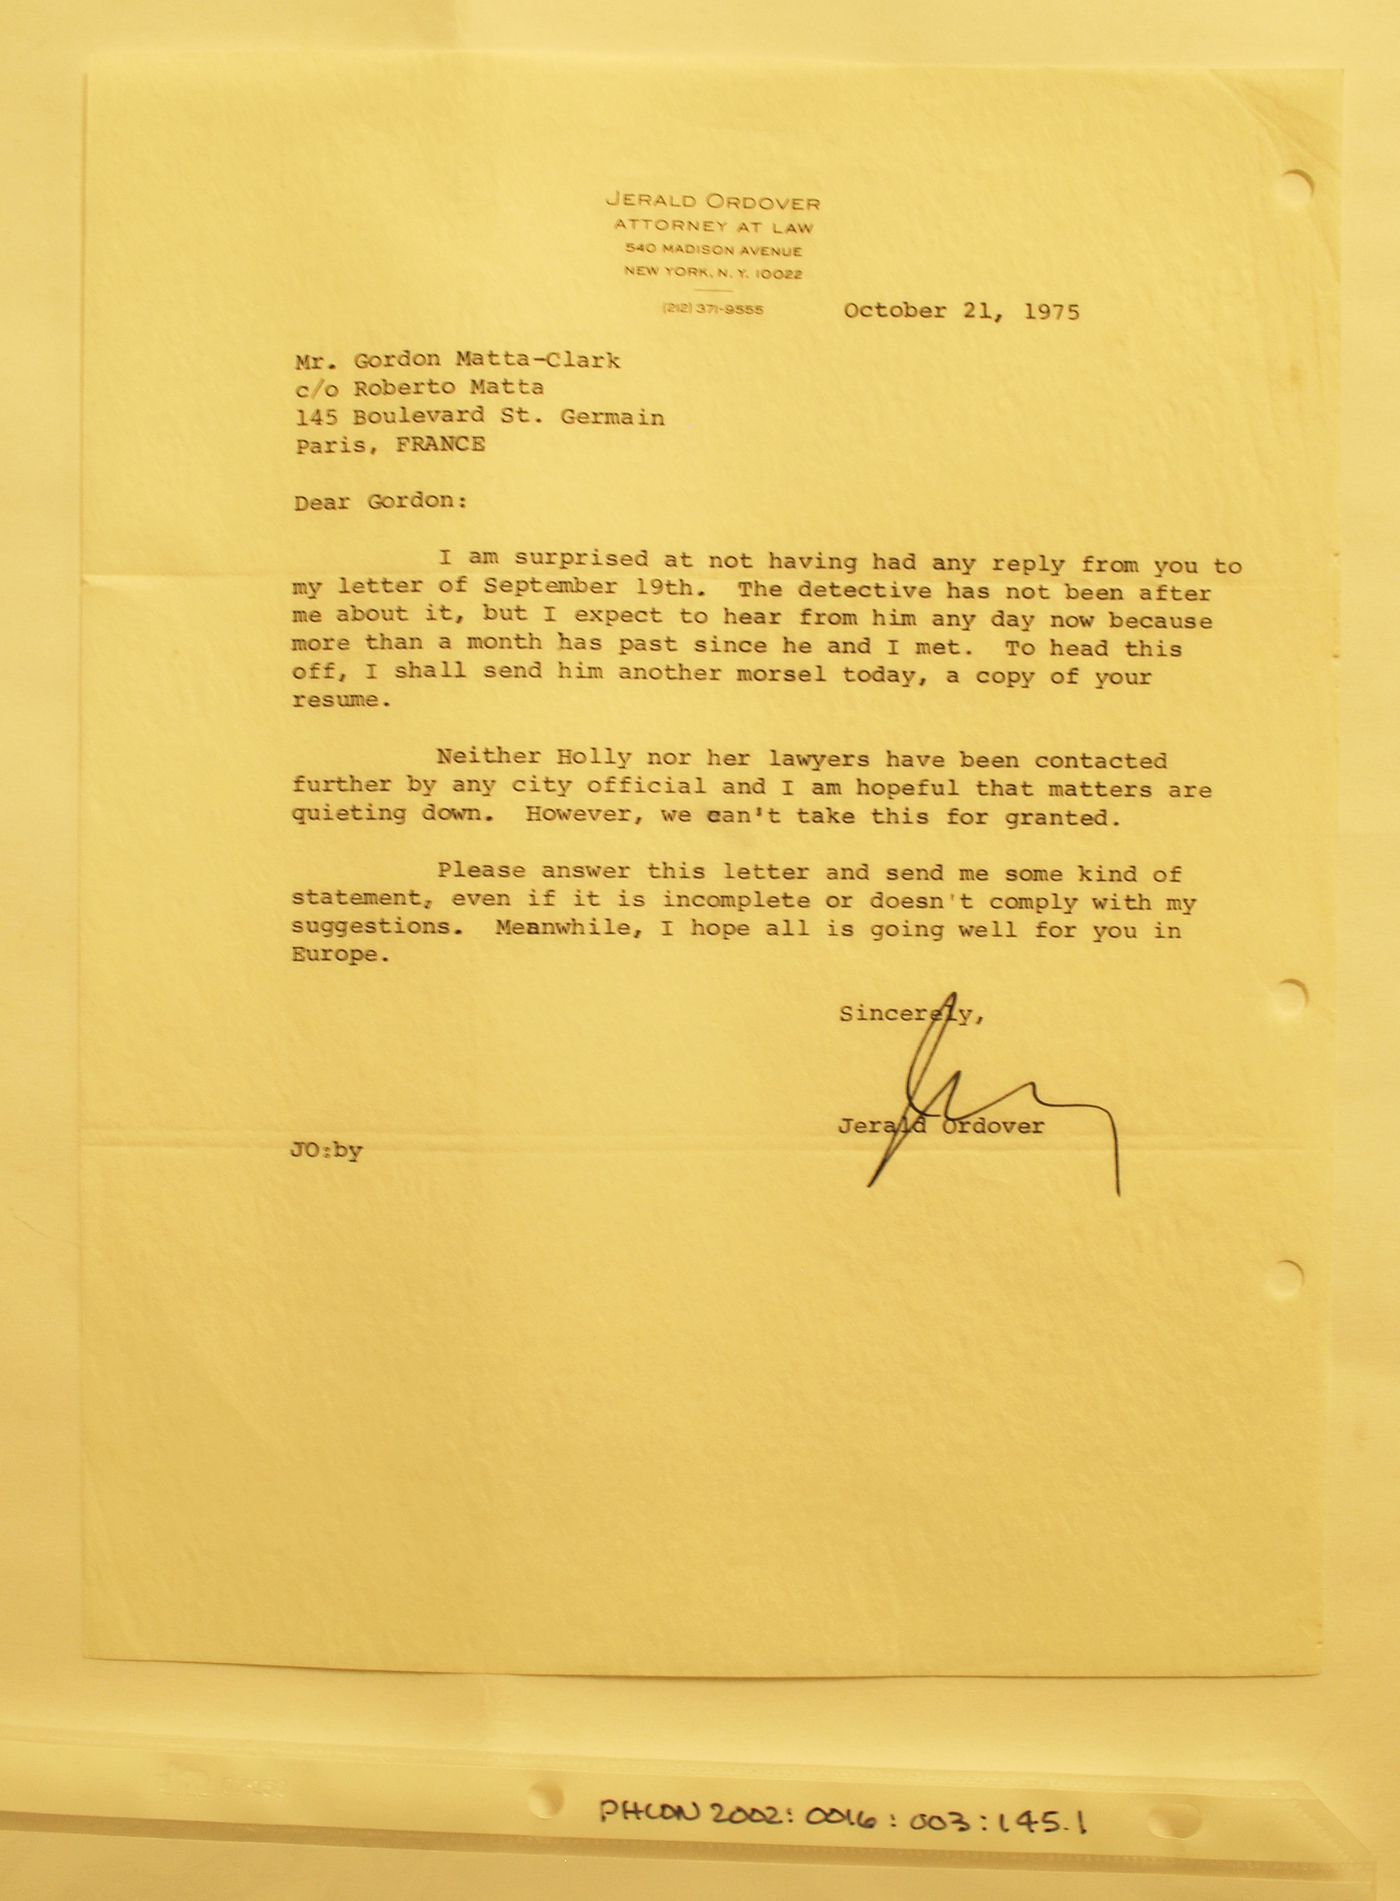 Letter from Jerald Ordover to Gordon Matta-Clark